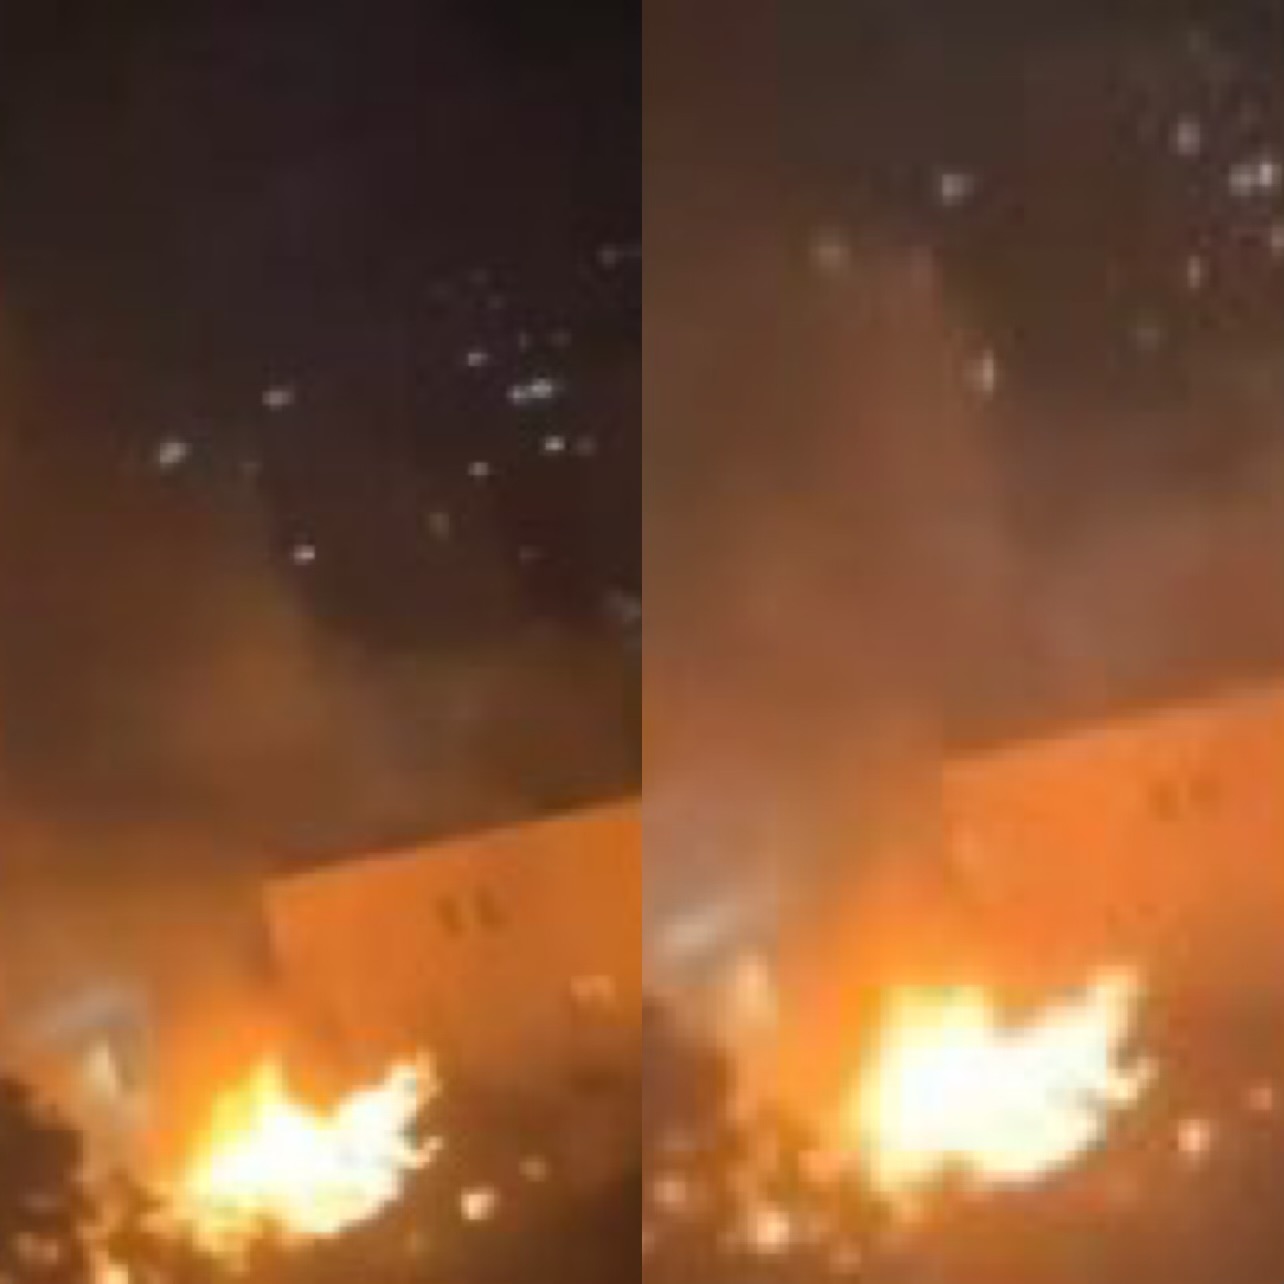 VIDEOLAJM/ Zjarr në një ish magazinë shtetërore në Kamëz, flakët përfshijnë disa dyqane